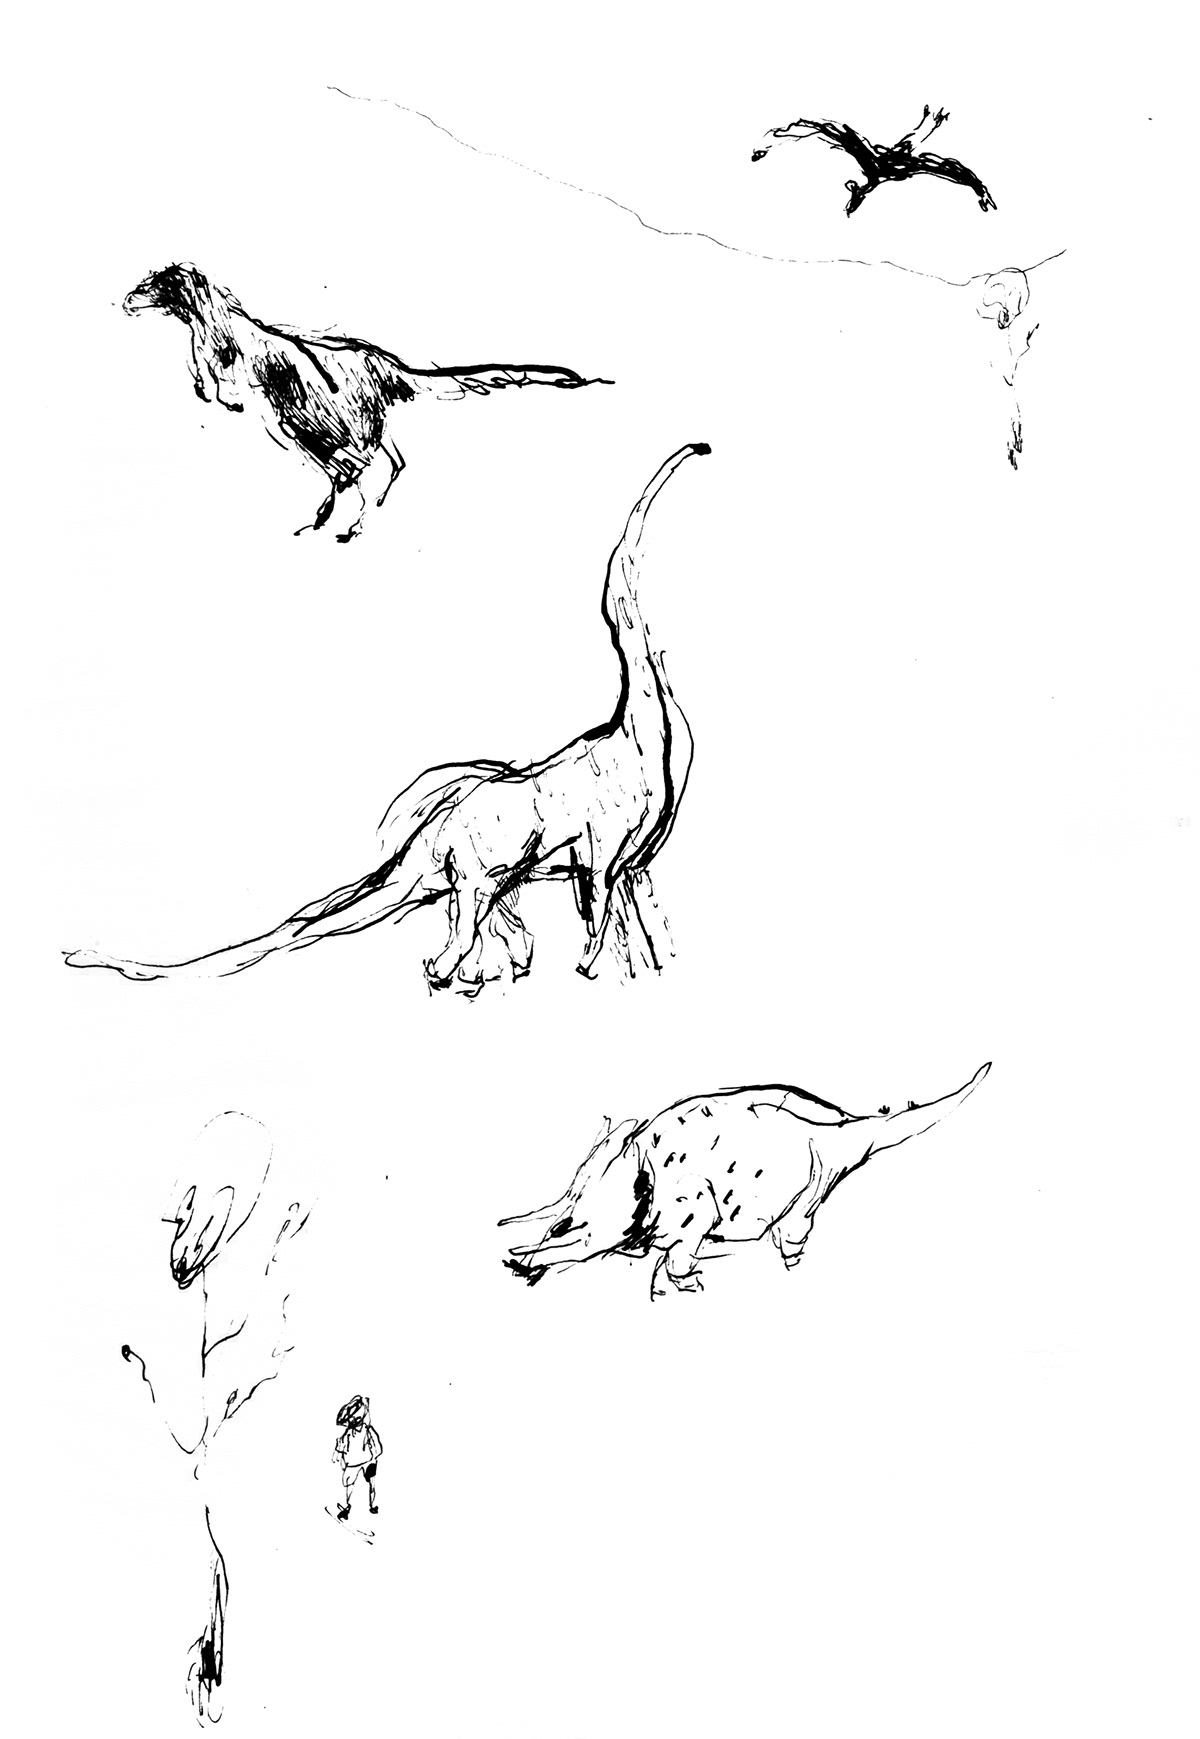 Dinosaurios dinosaurs triceratops tiranosaurio tyrannosaurus dibujo bocetos sketchbook lapiz pencil ink tinta